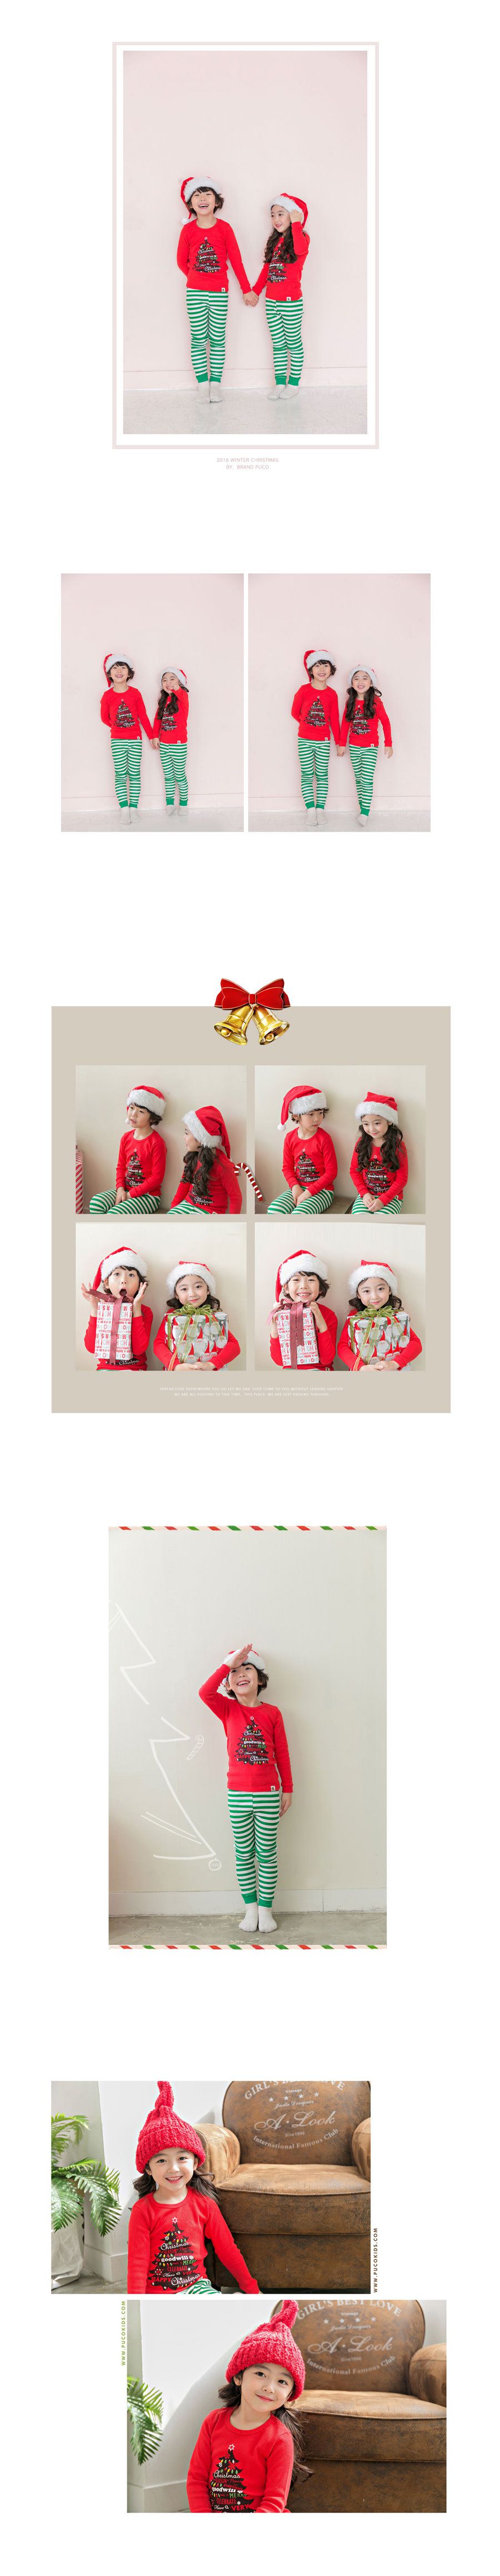 【超值特價】韓國製純棉長袖家居服-歡樂耶誕樹